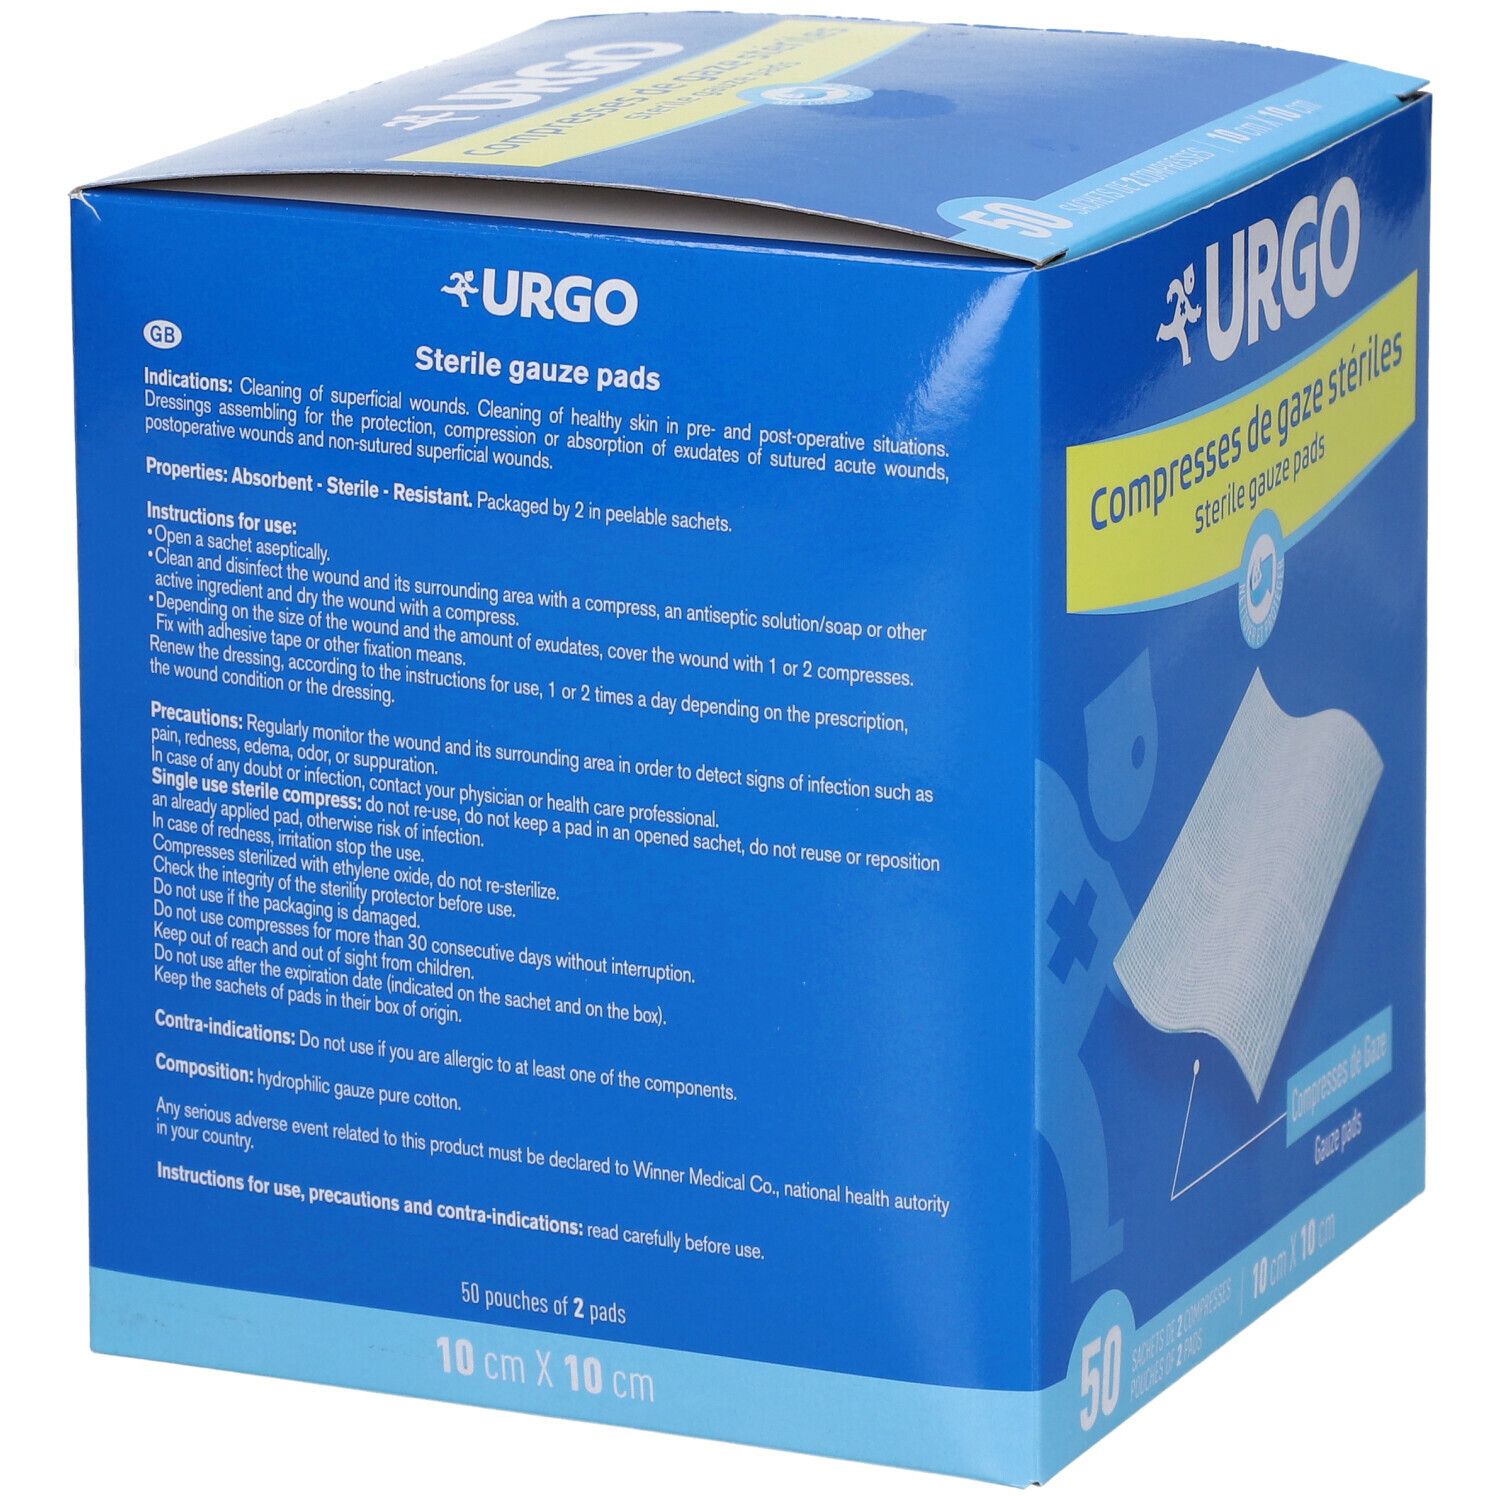 Urgo Compresses stériles 30 x 30 cm boîte de 10